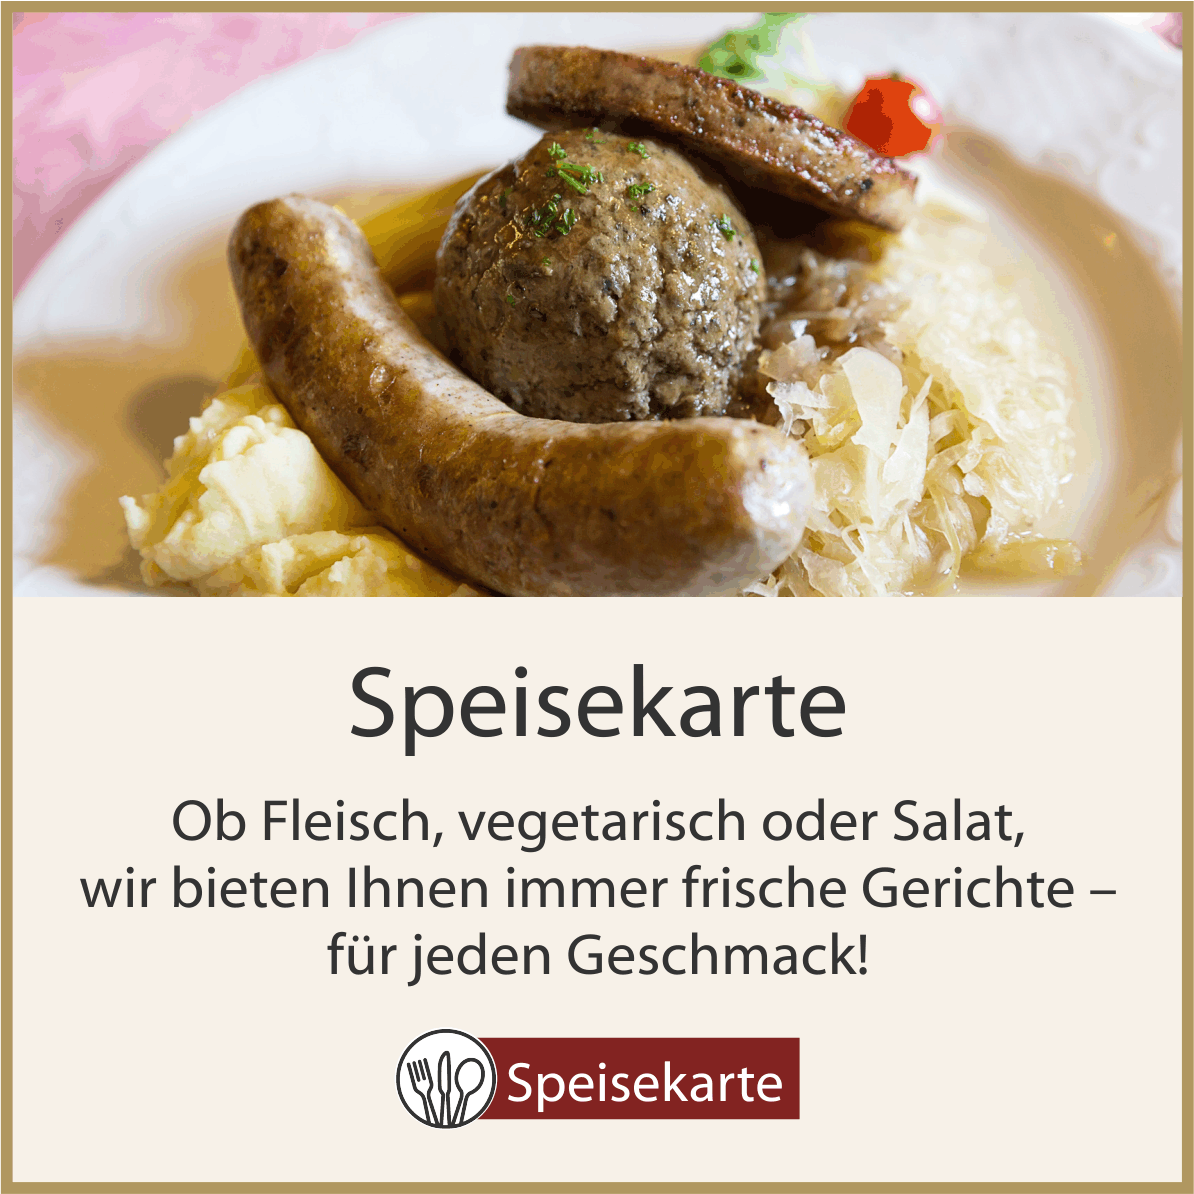 Speisekarte - Spezialitäten aus Deutschland und der Pfalz